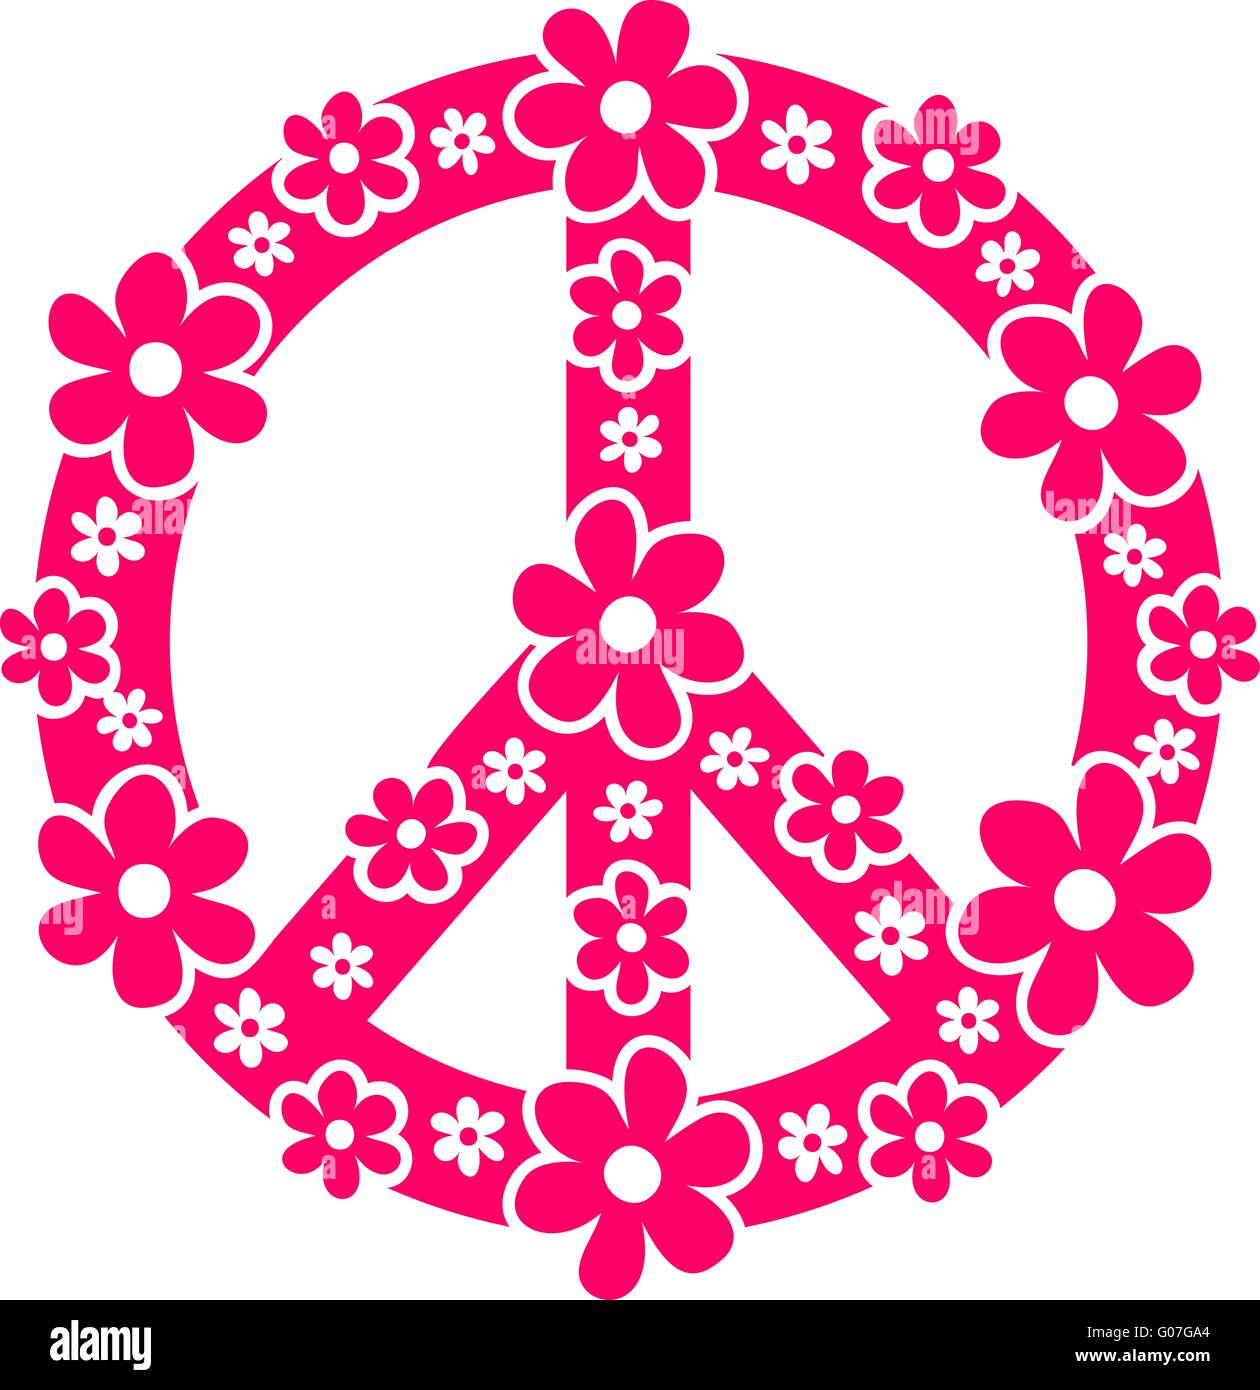 Signo de paz - flower power Foto de stock